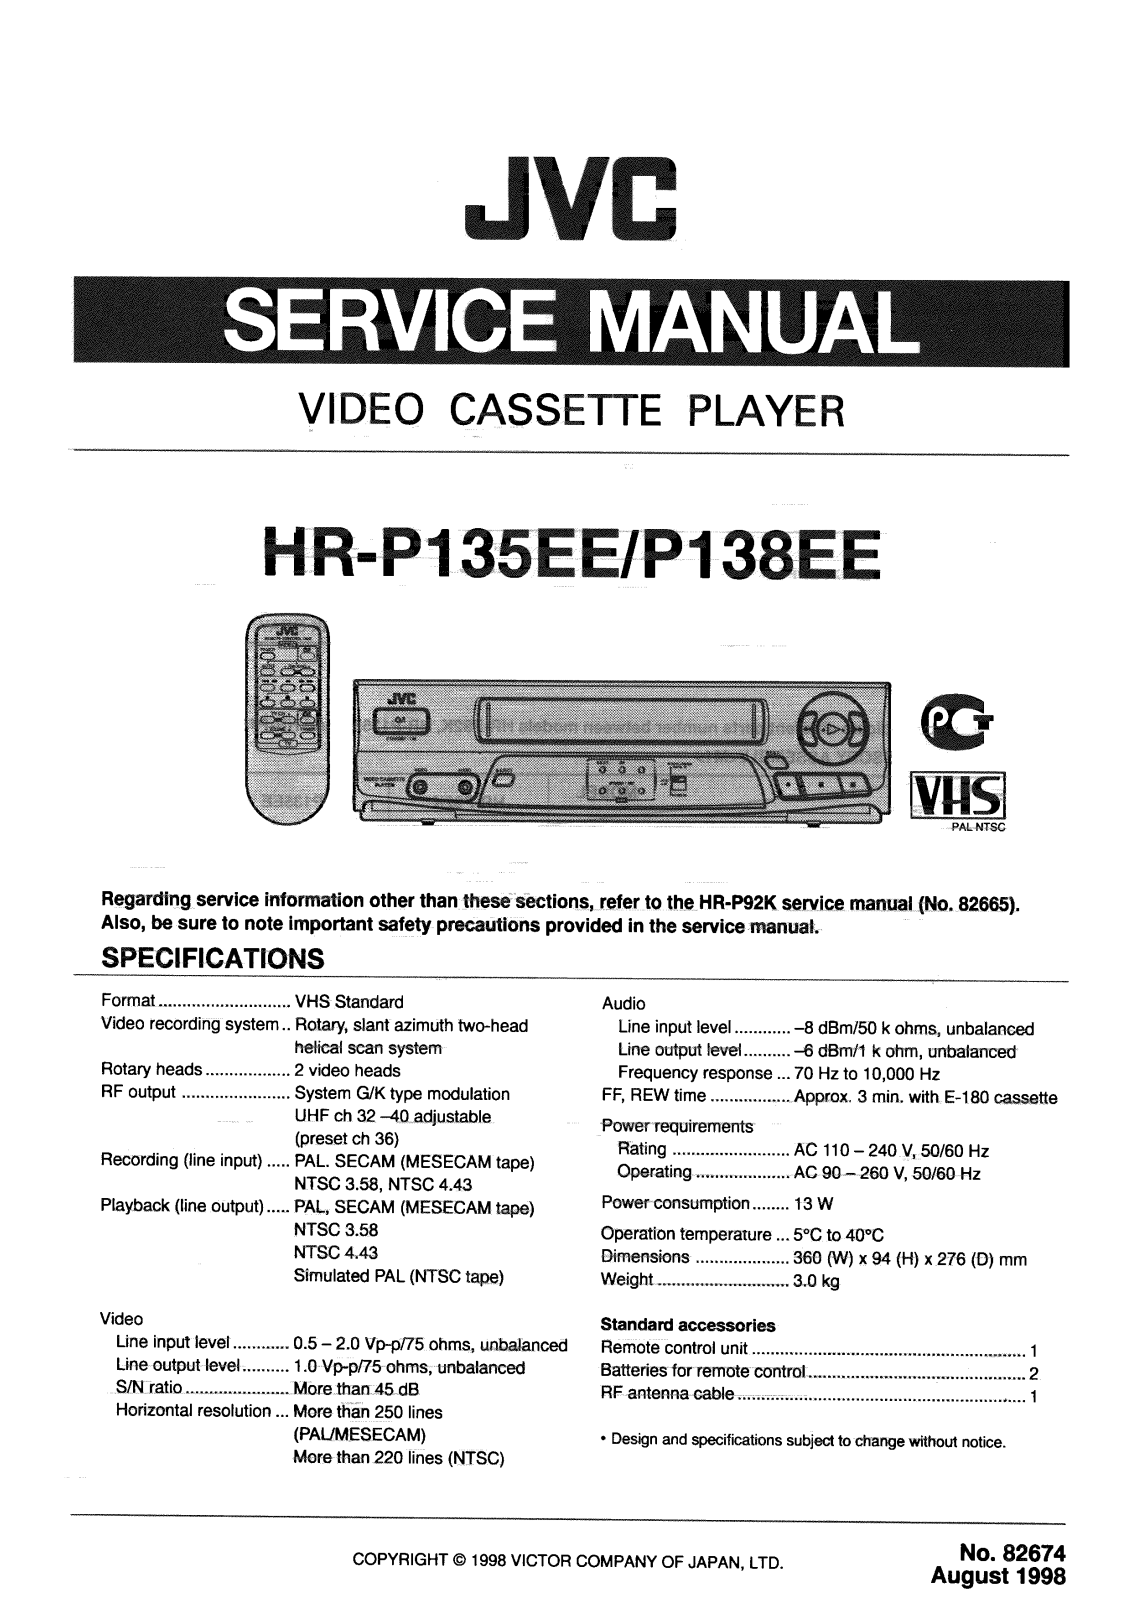 JVC HR-P135EE, HR-P138EE Service Manual